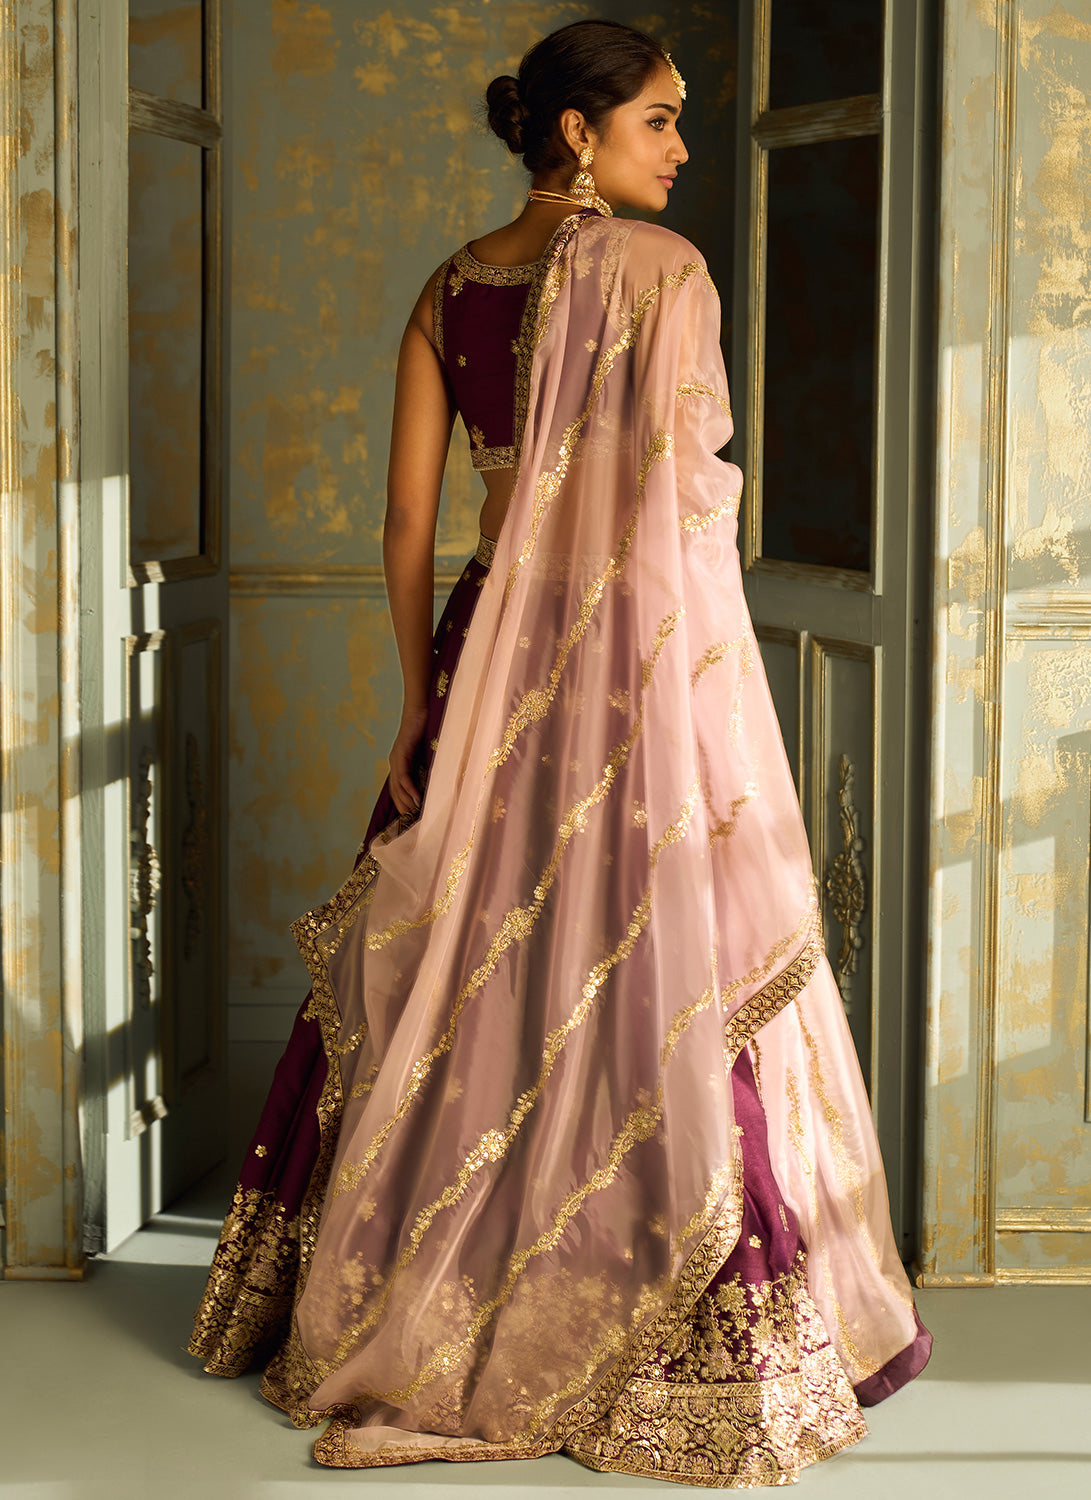 Diwali Lehenga choli dupatta silk gotapatti bandhani bridal wedding indian  women | eBay